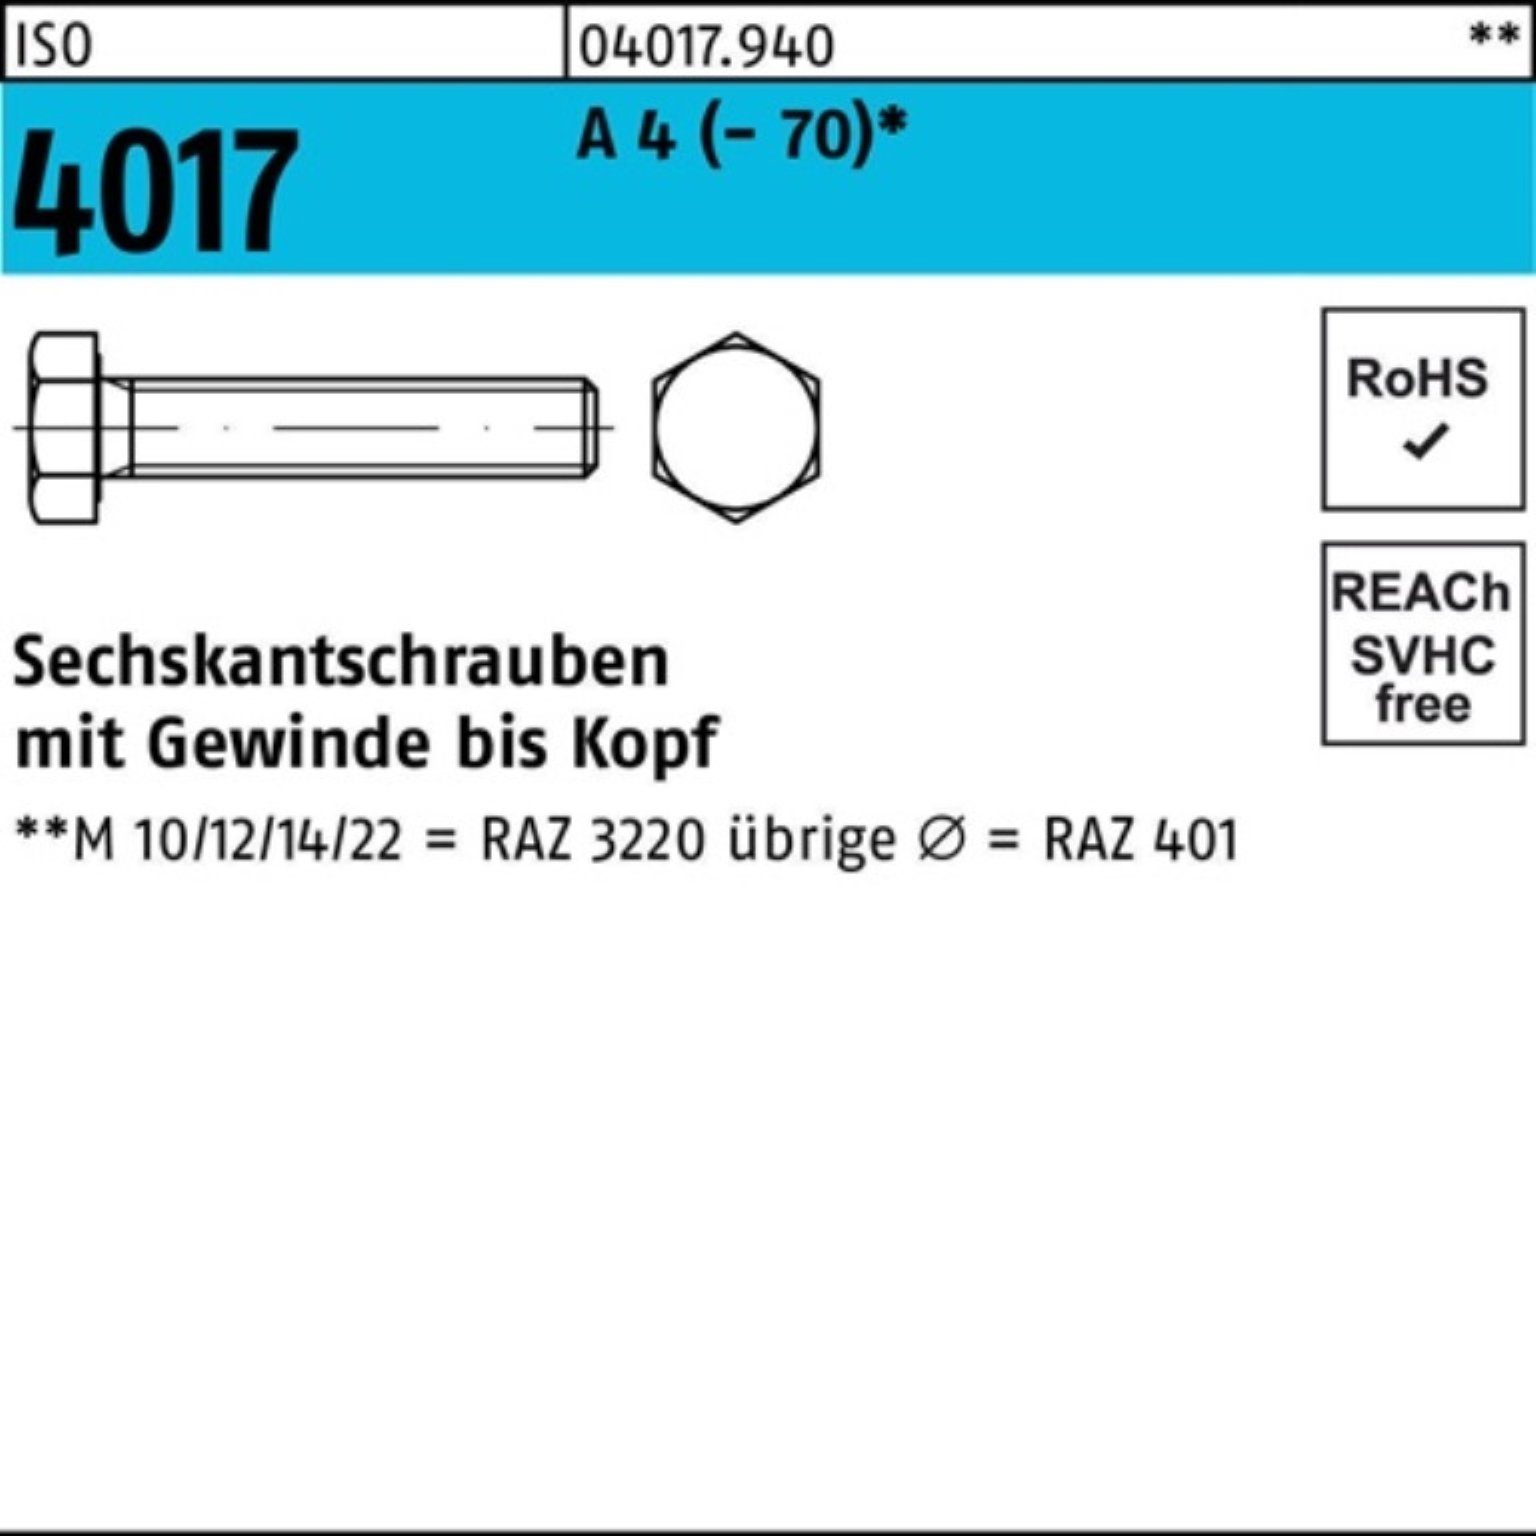 Bufab Sechskantschraube 100er Pack Sechskantschraube (70) M12x Stück 60 4 4017 VG A 50 ISO